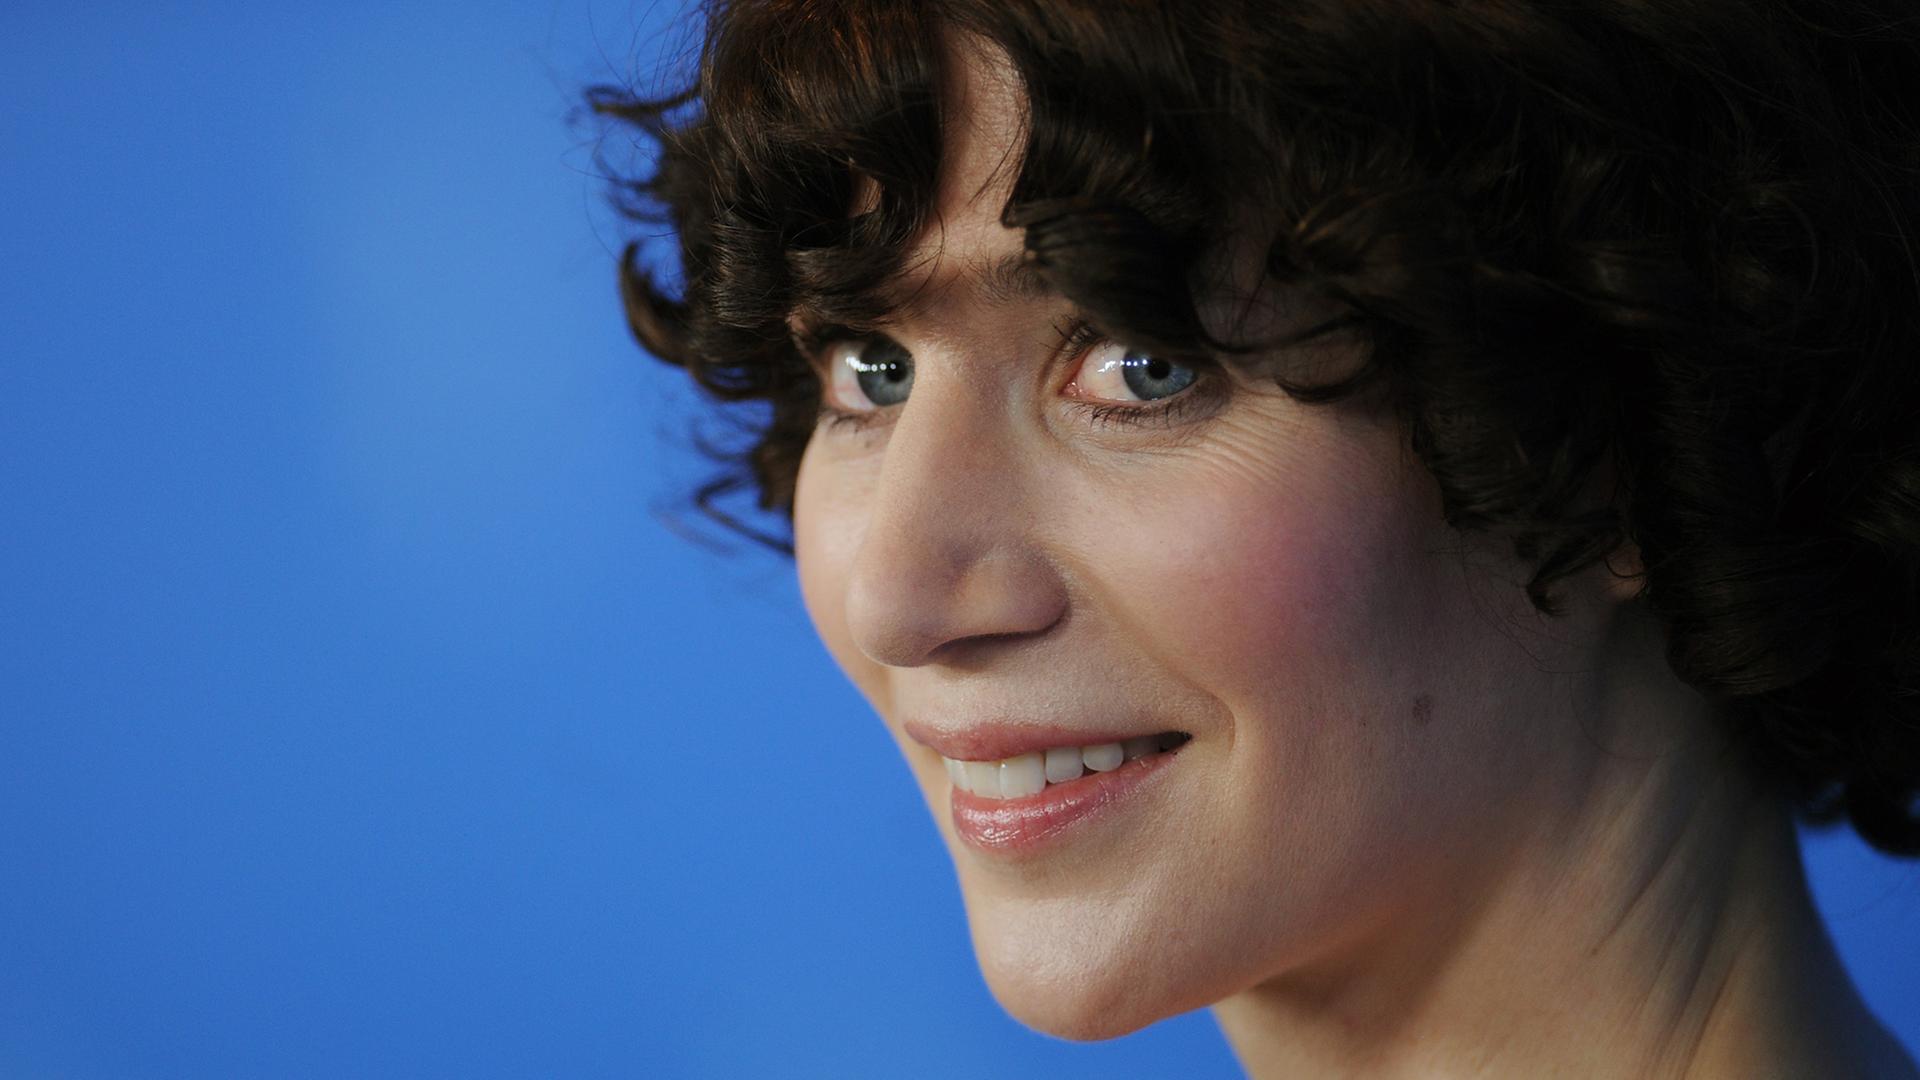 Die US-amerikanische Künstlerin, Regisseurin, Drehbuchschreiberin, Schauspielerin, Schriftstellerin und Musikerin Miranda July, aufgenommen 2011 beim Berlinale-Filmfestival in Berlin